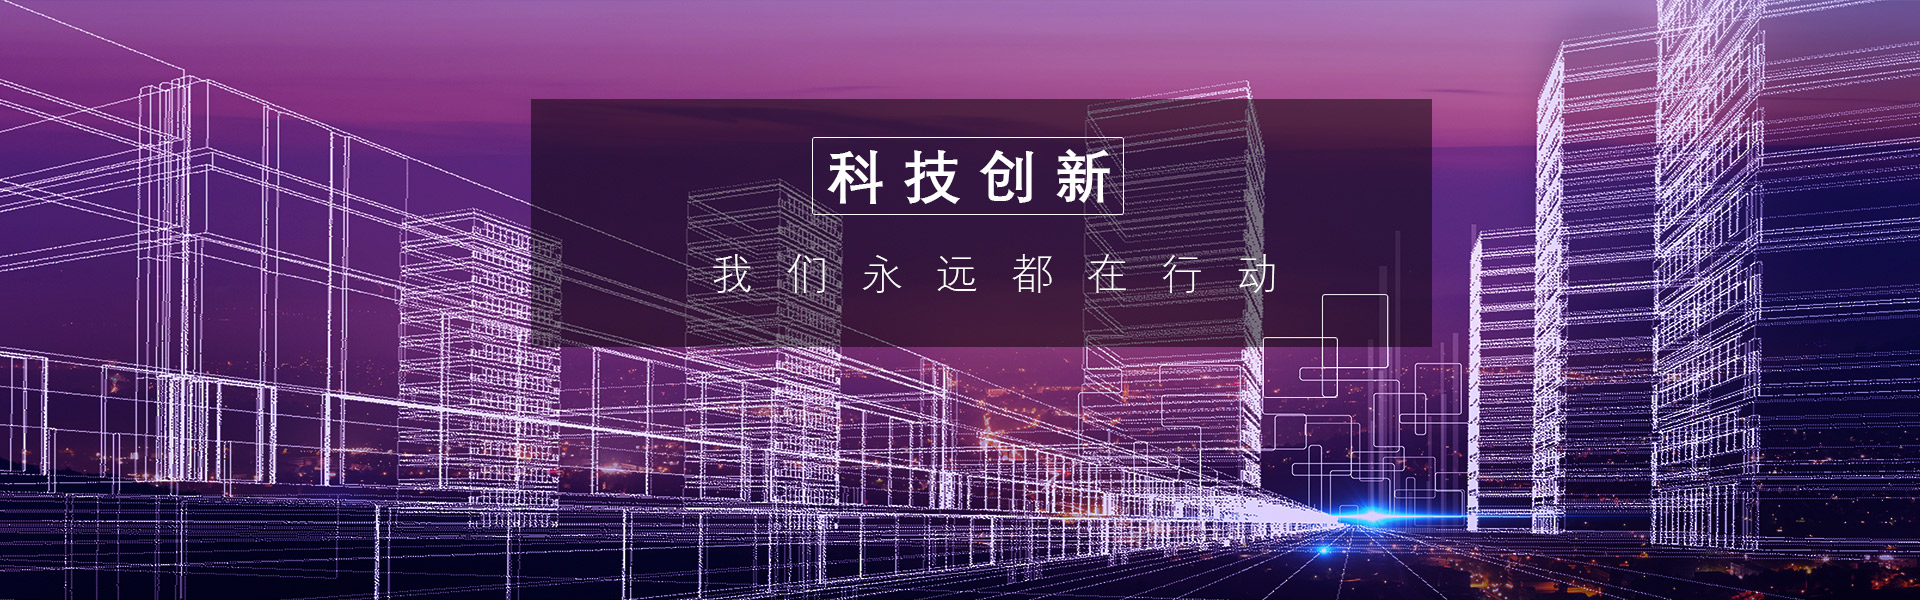 获得奖项_广州市天谱电器有限公司官方网站_广州市天谱电器有限公司